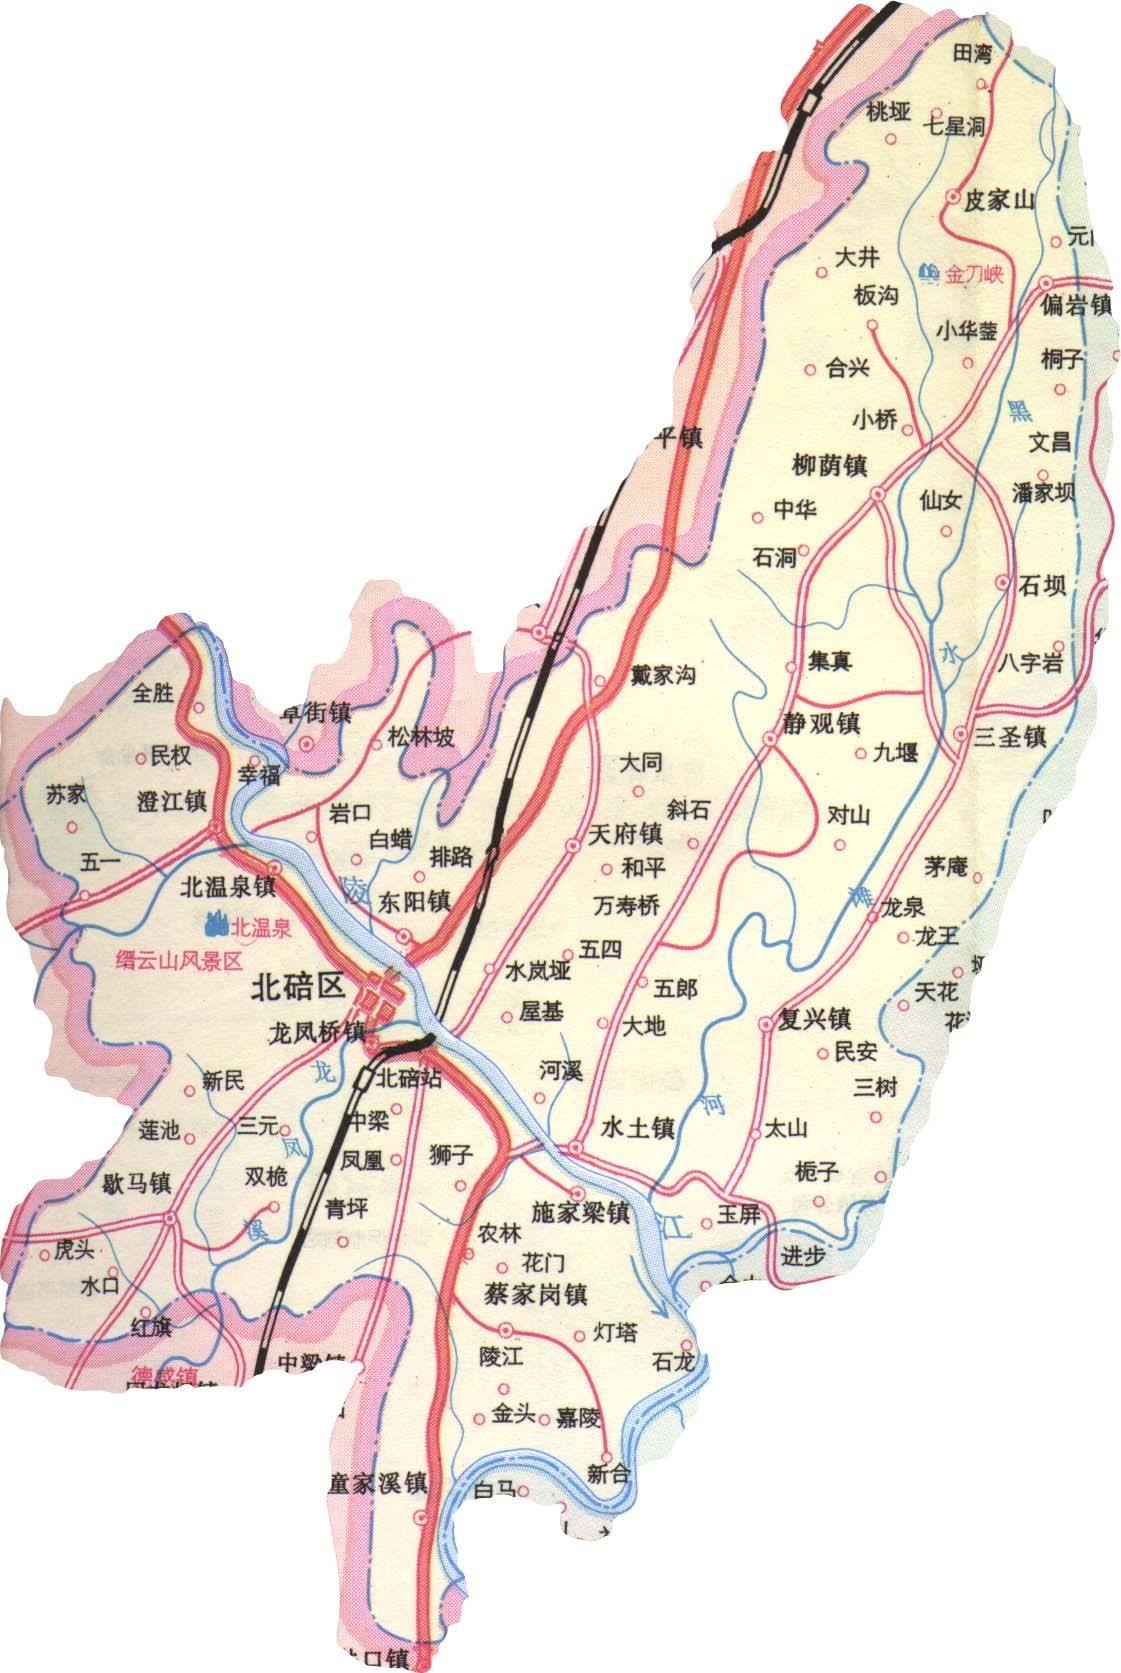 重庆玩了我毕竟是主城九区之一啊为什么存在感就这么低呢(北碚区地图